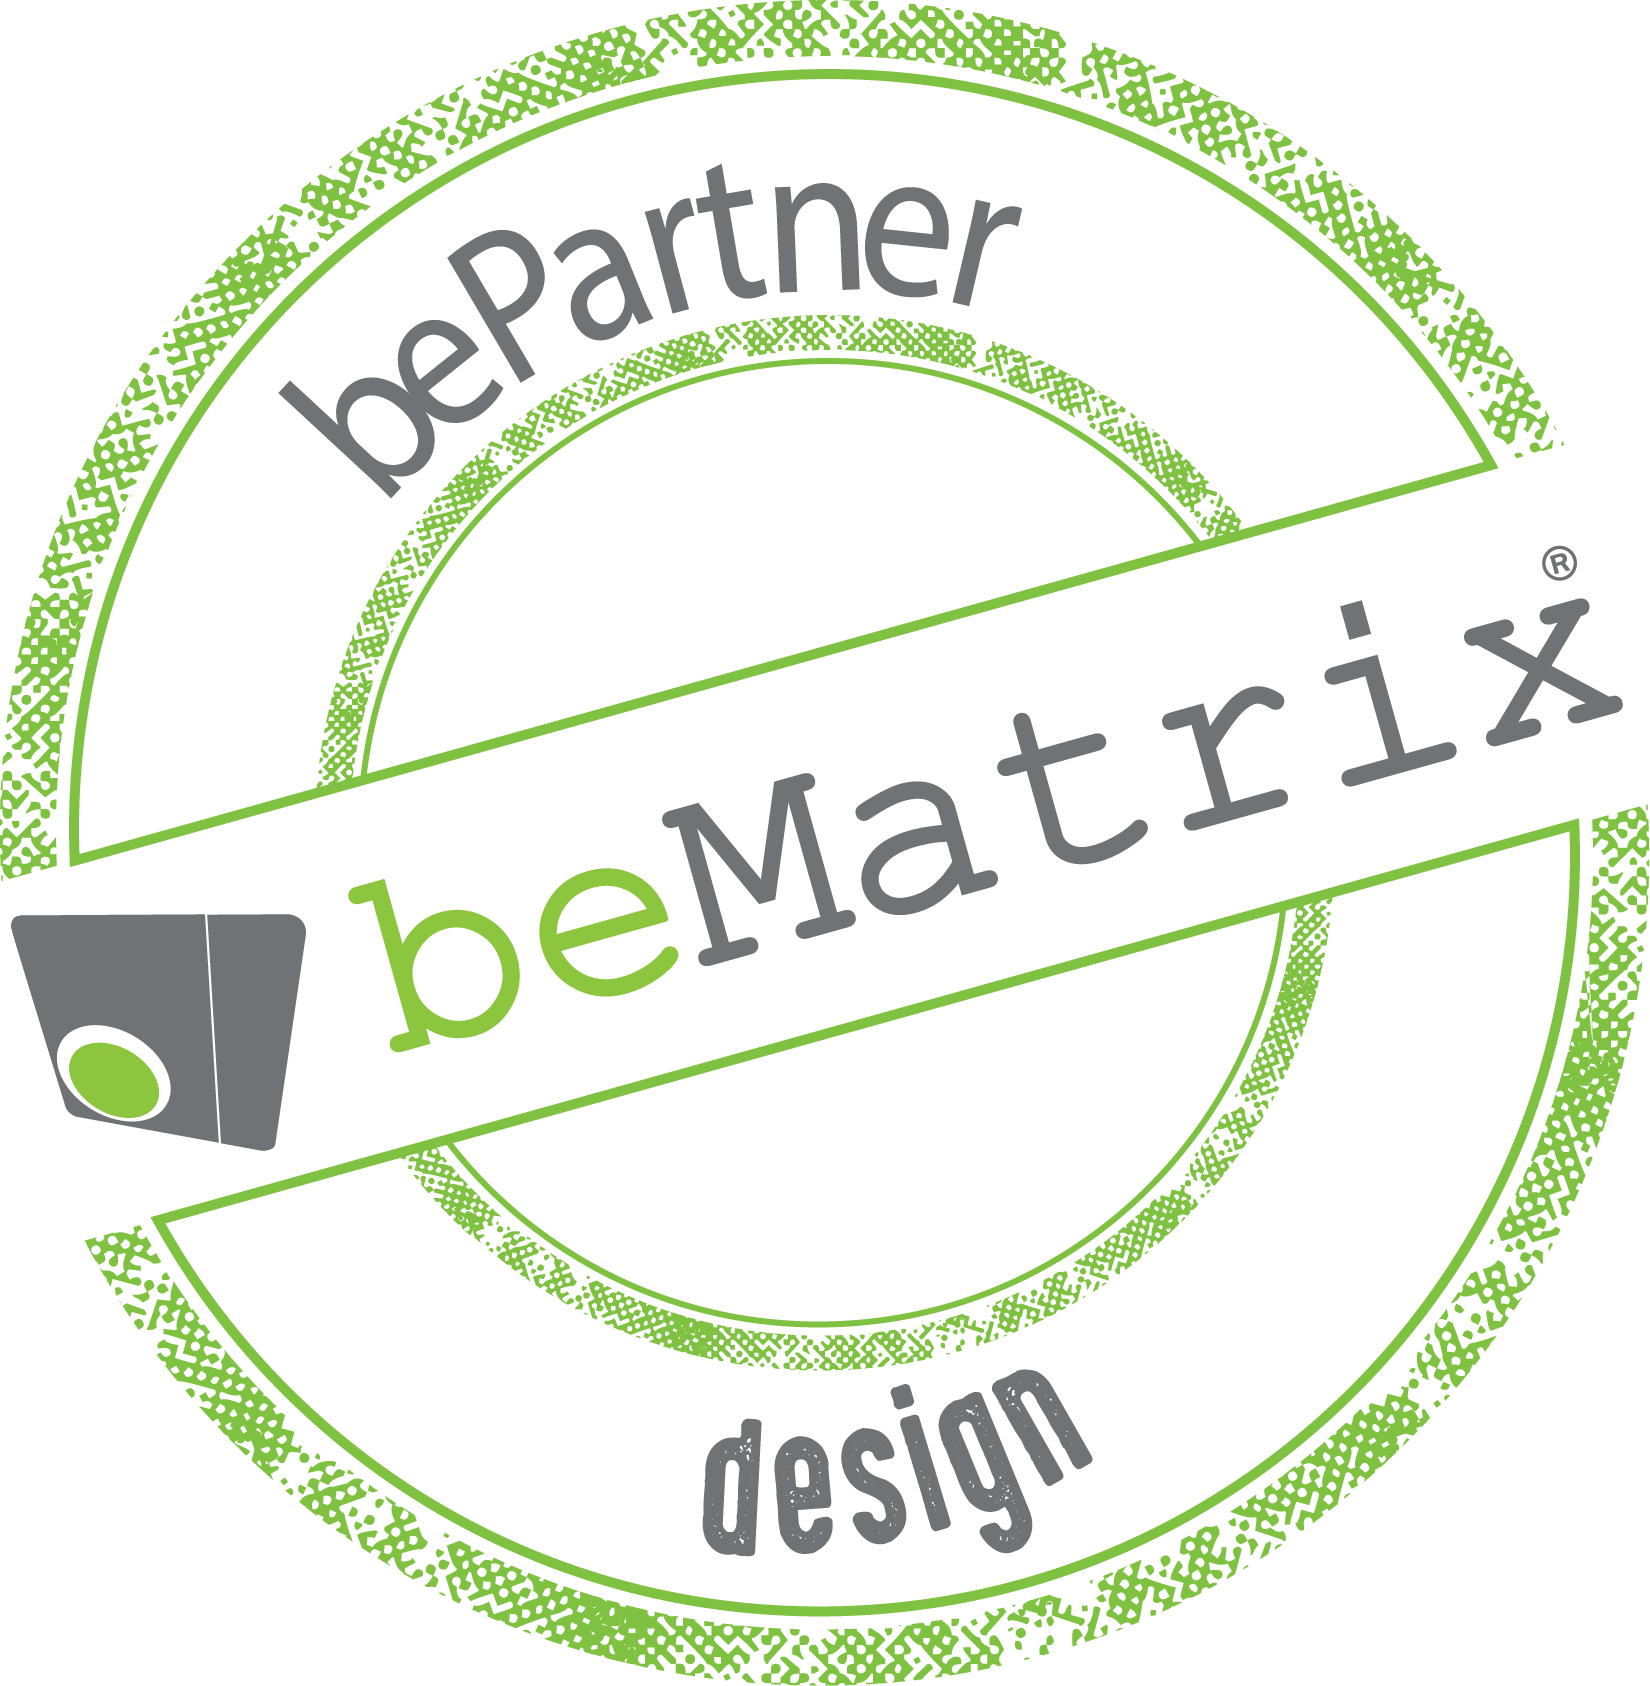 beMatrix design partner badge